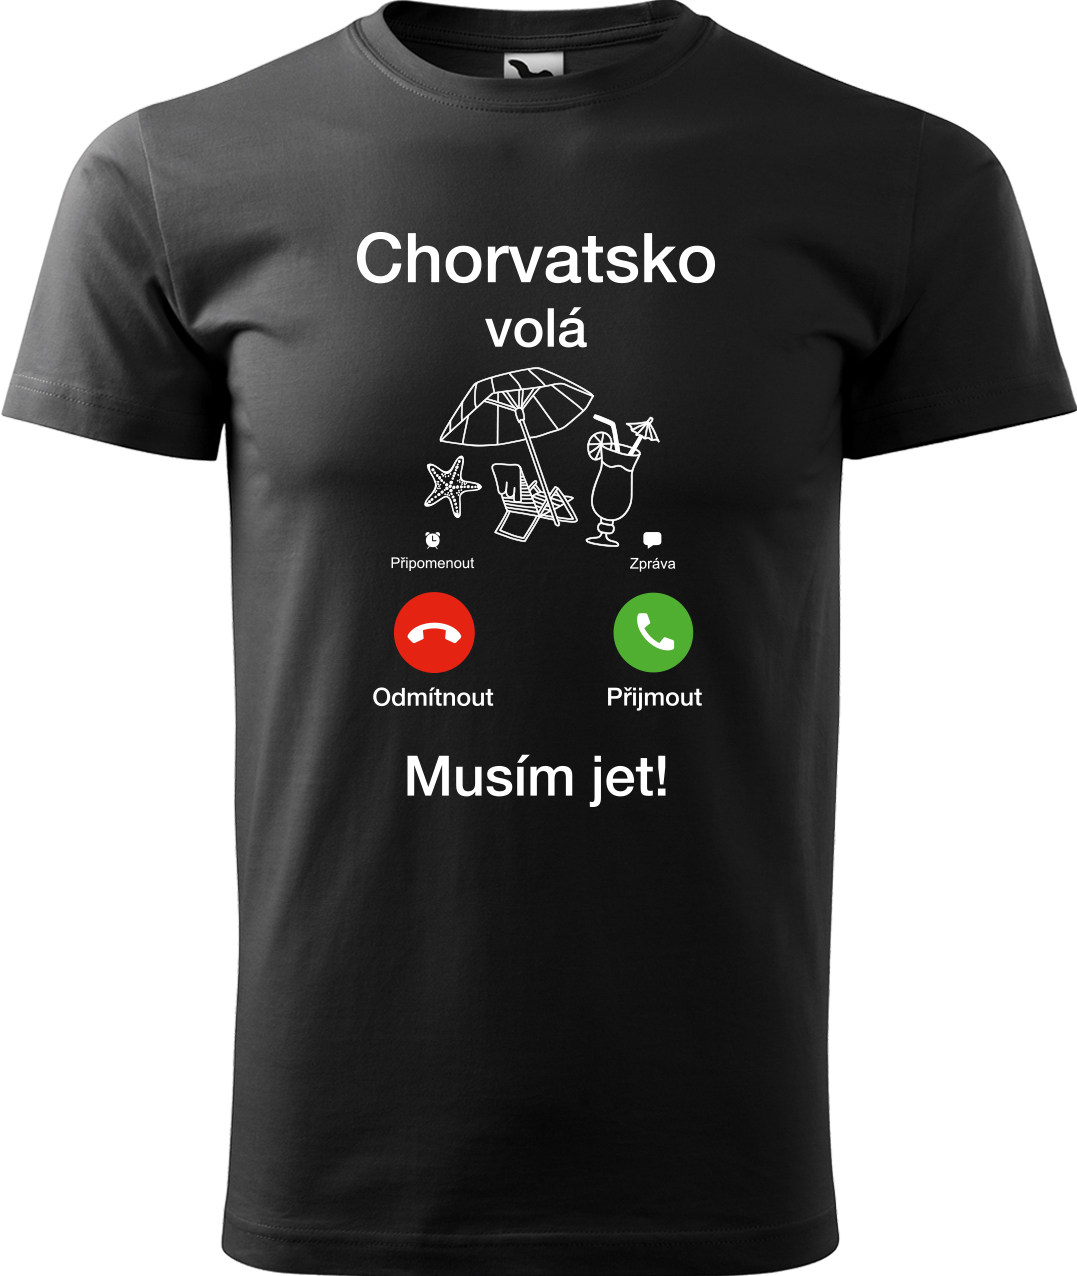 Pánské cestovatelské tričko - Chorvatsko volá - musím jet! Velikost: S, Barva: Černá (01), Střih: pánský